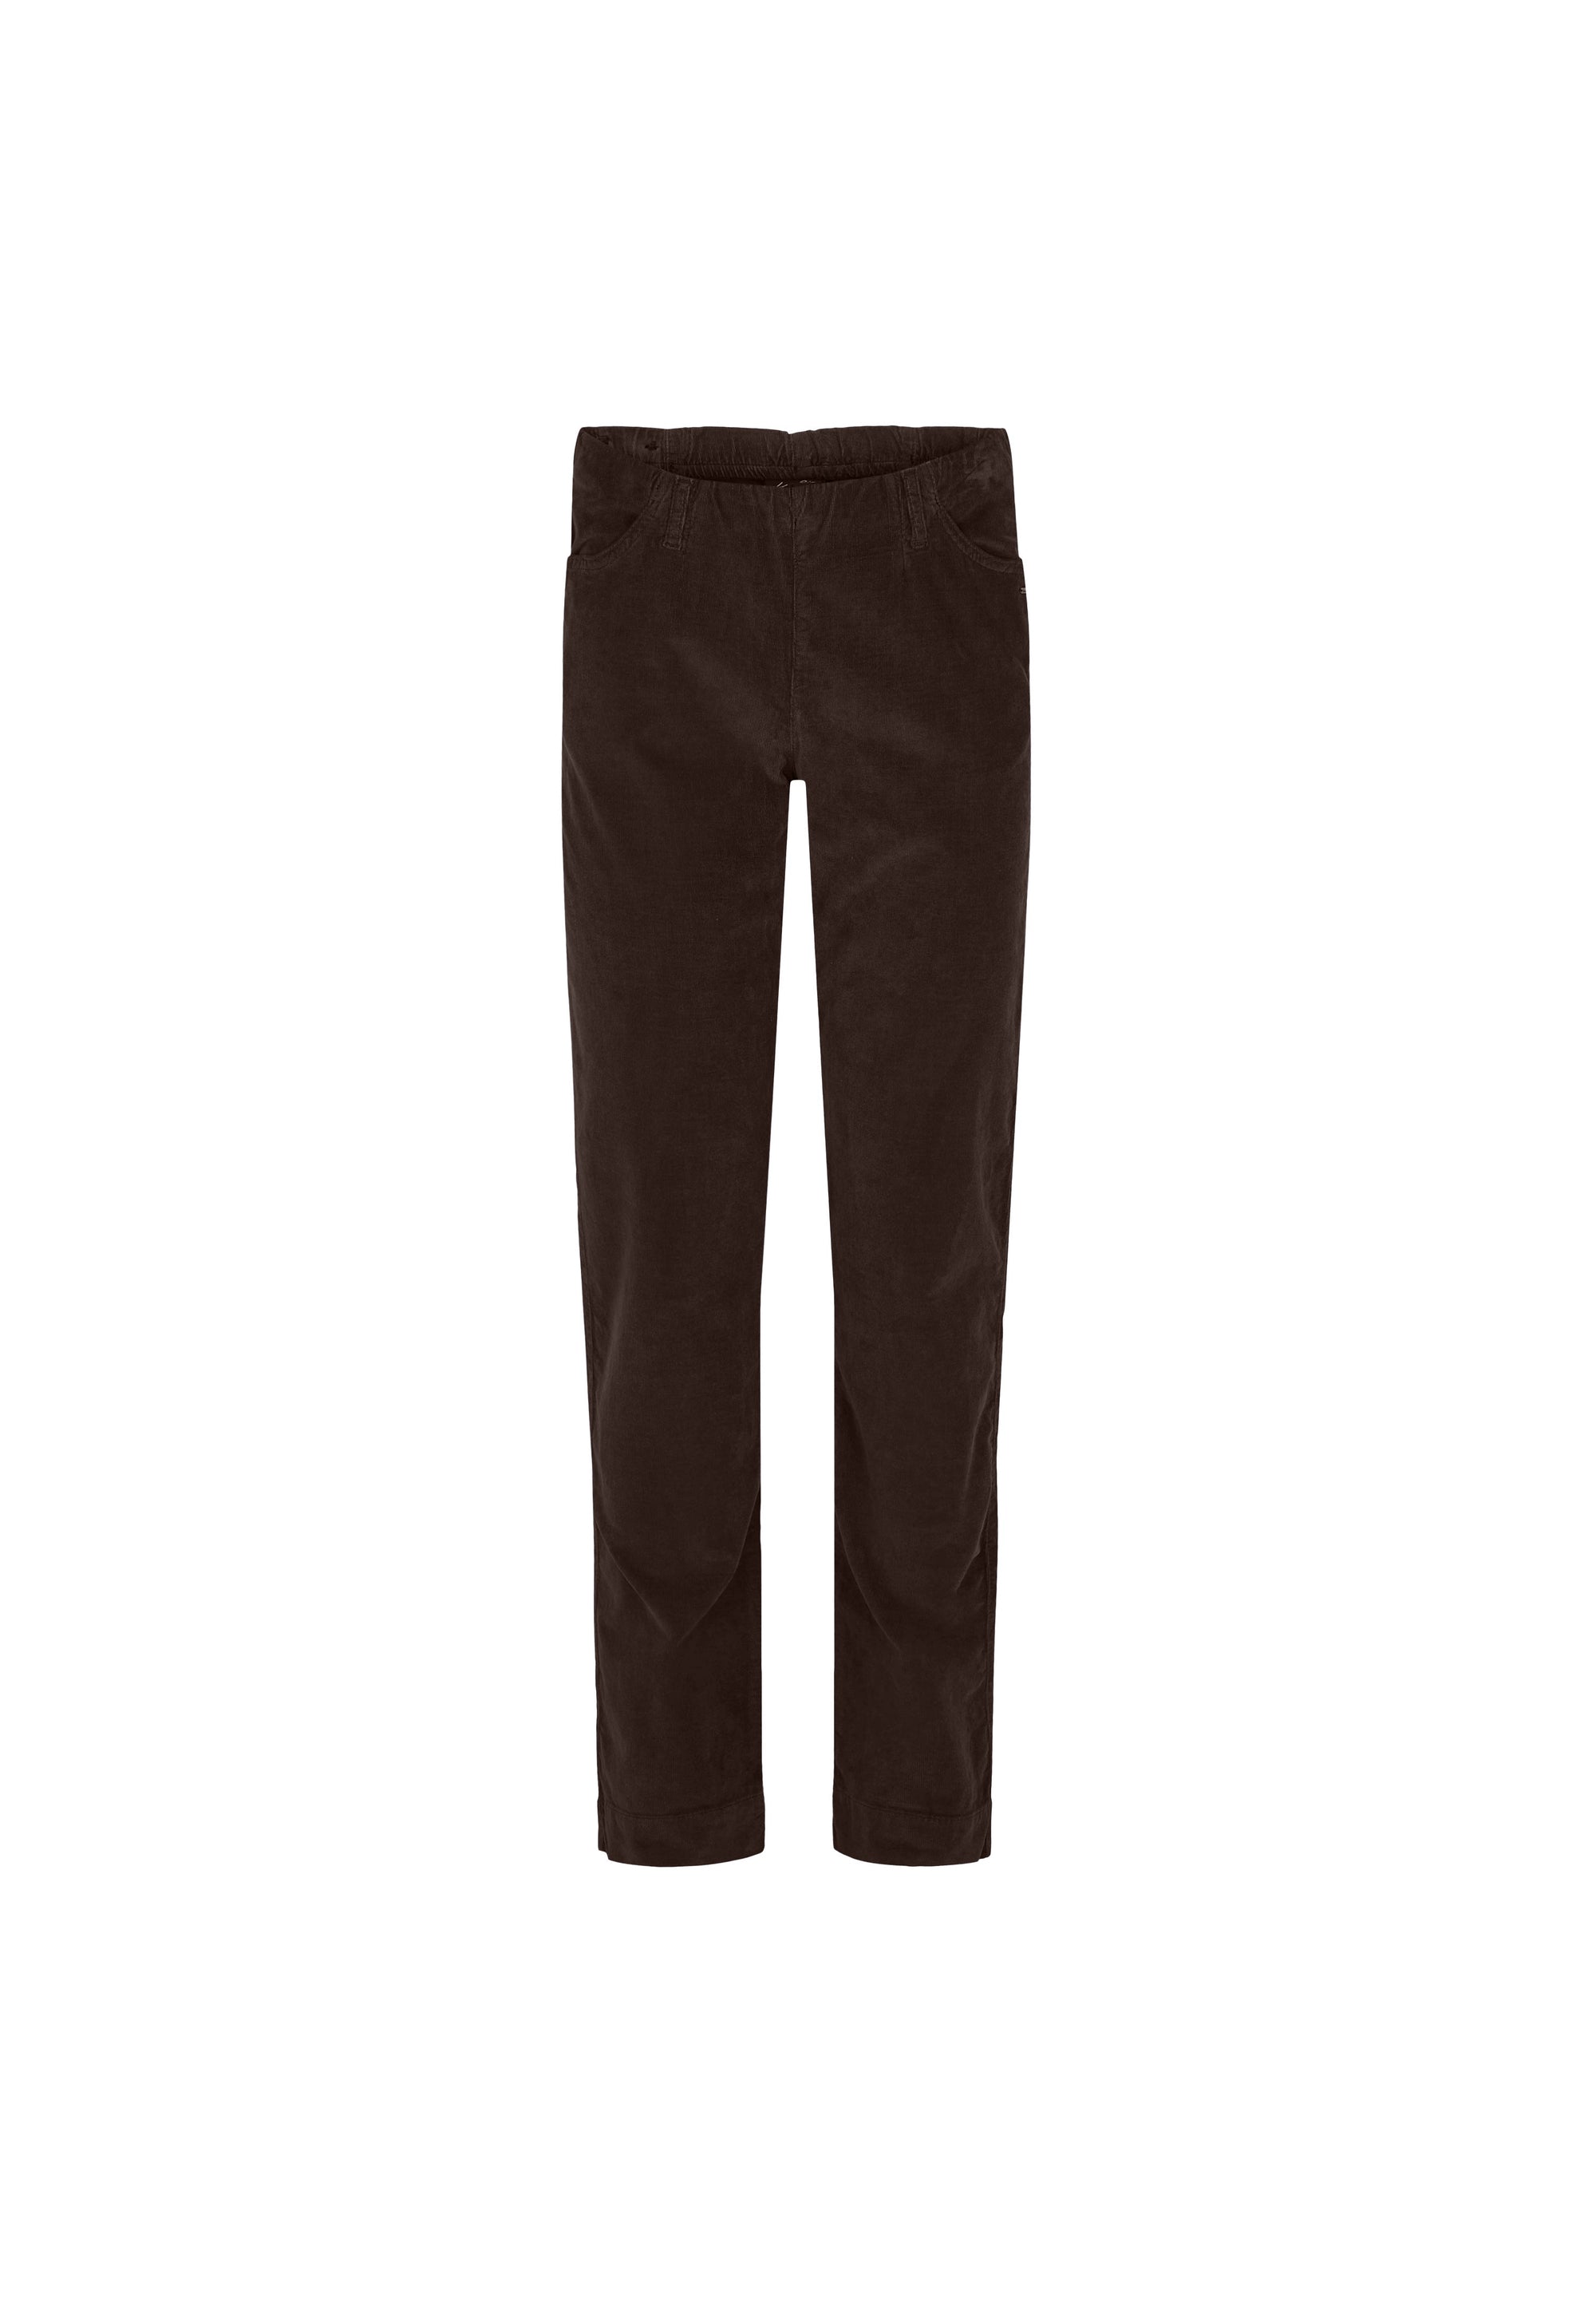 LAURIE  Kelly Regular Corduroy - Medium Length Trousers REGULAR 88000 Brown